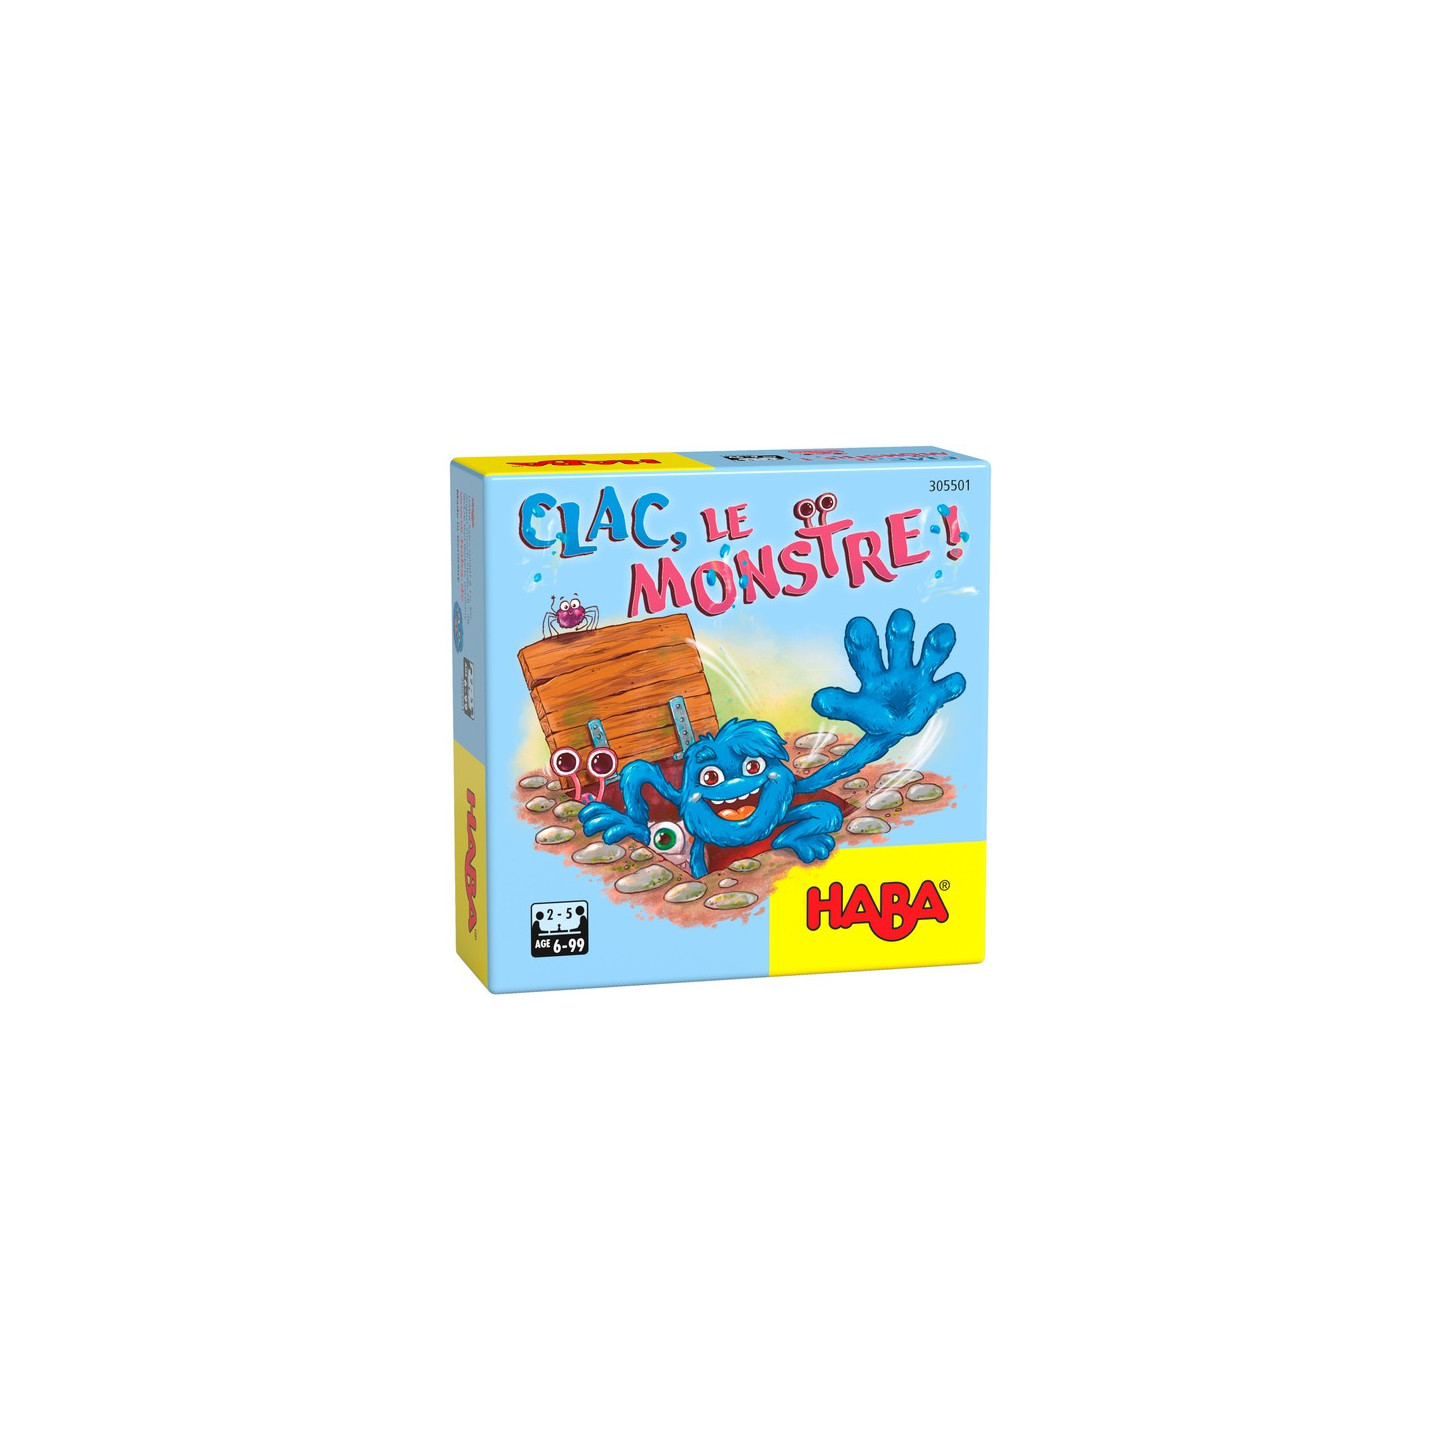 Clac Le Monstre !, jeu de société Haba